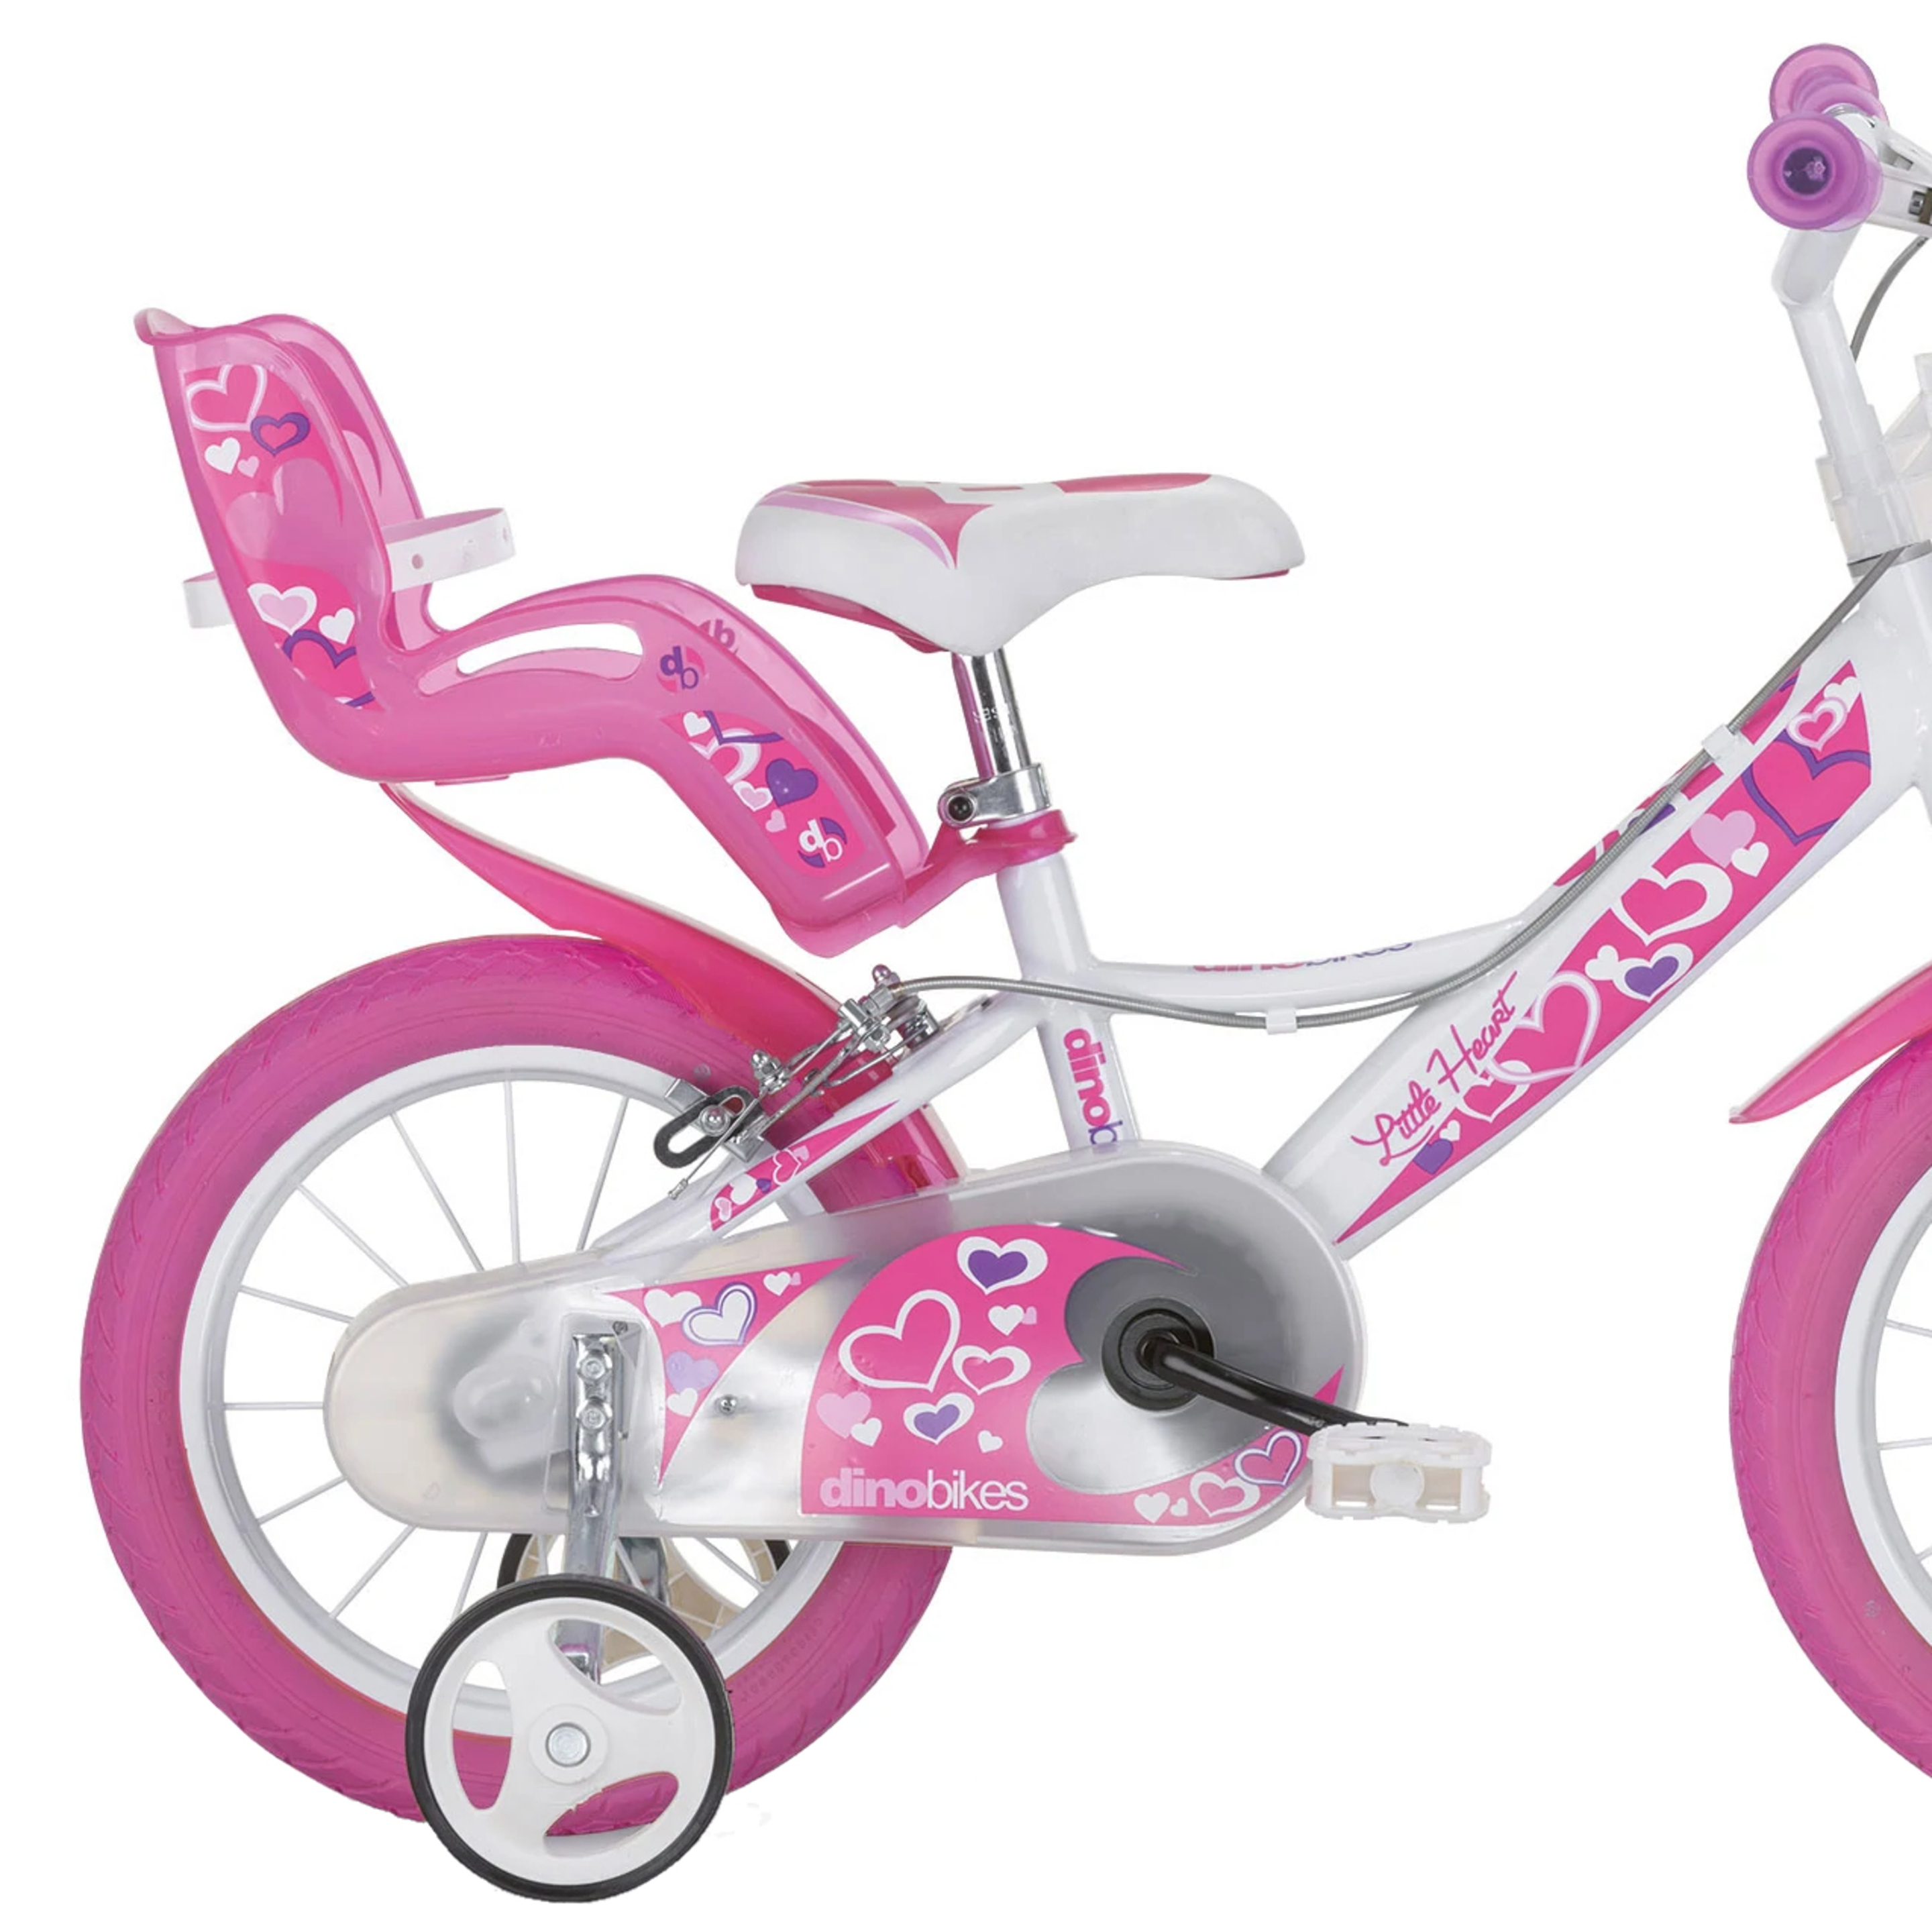 Bicicleta Infantil Hearts 14 Pulgadas - Rosa  MKP